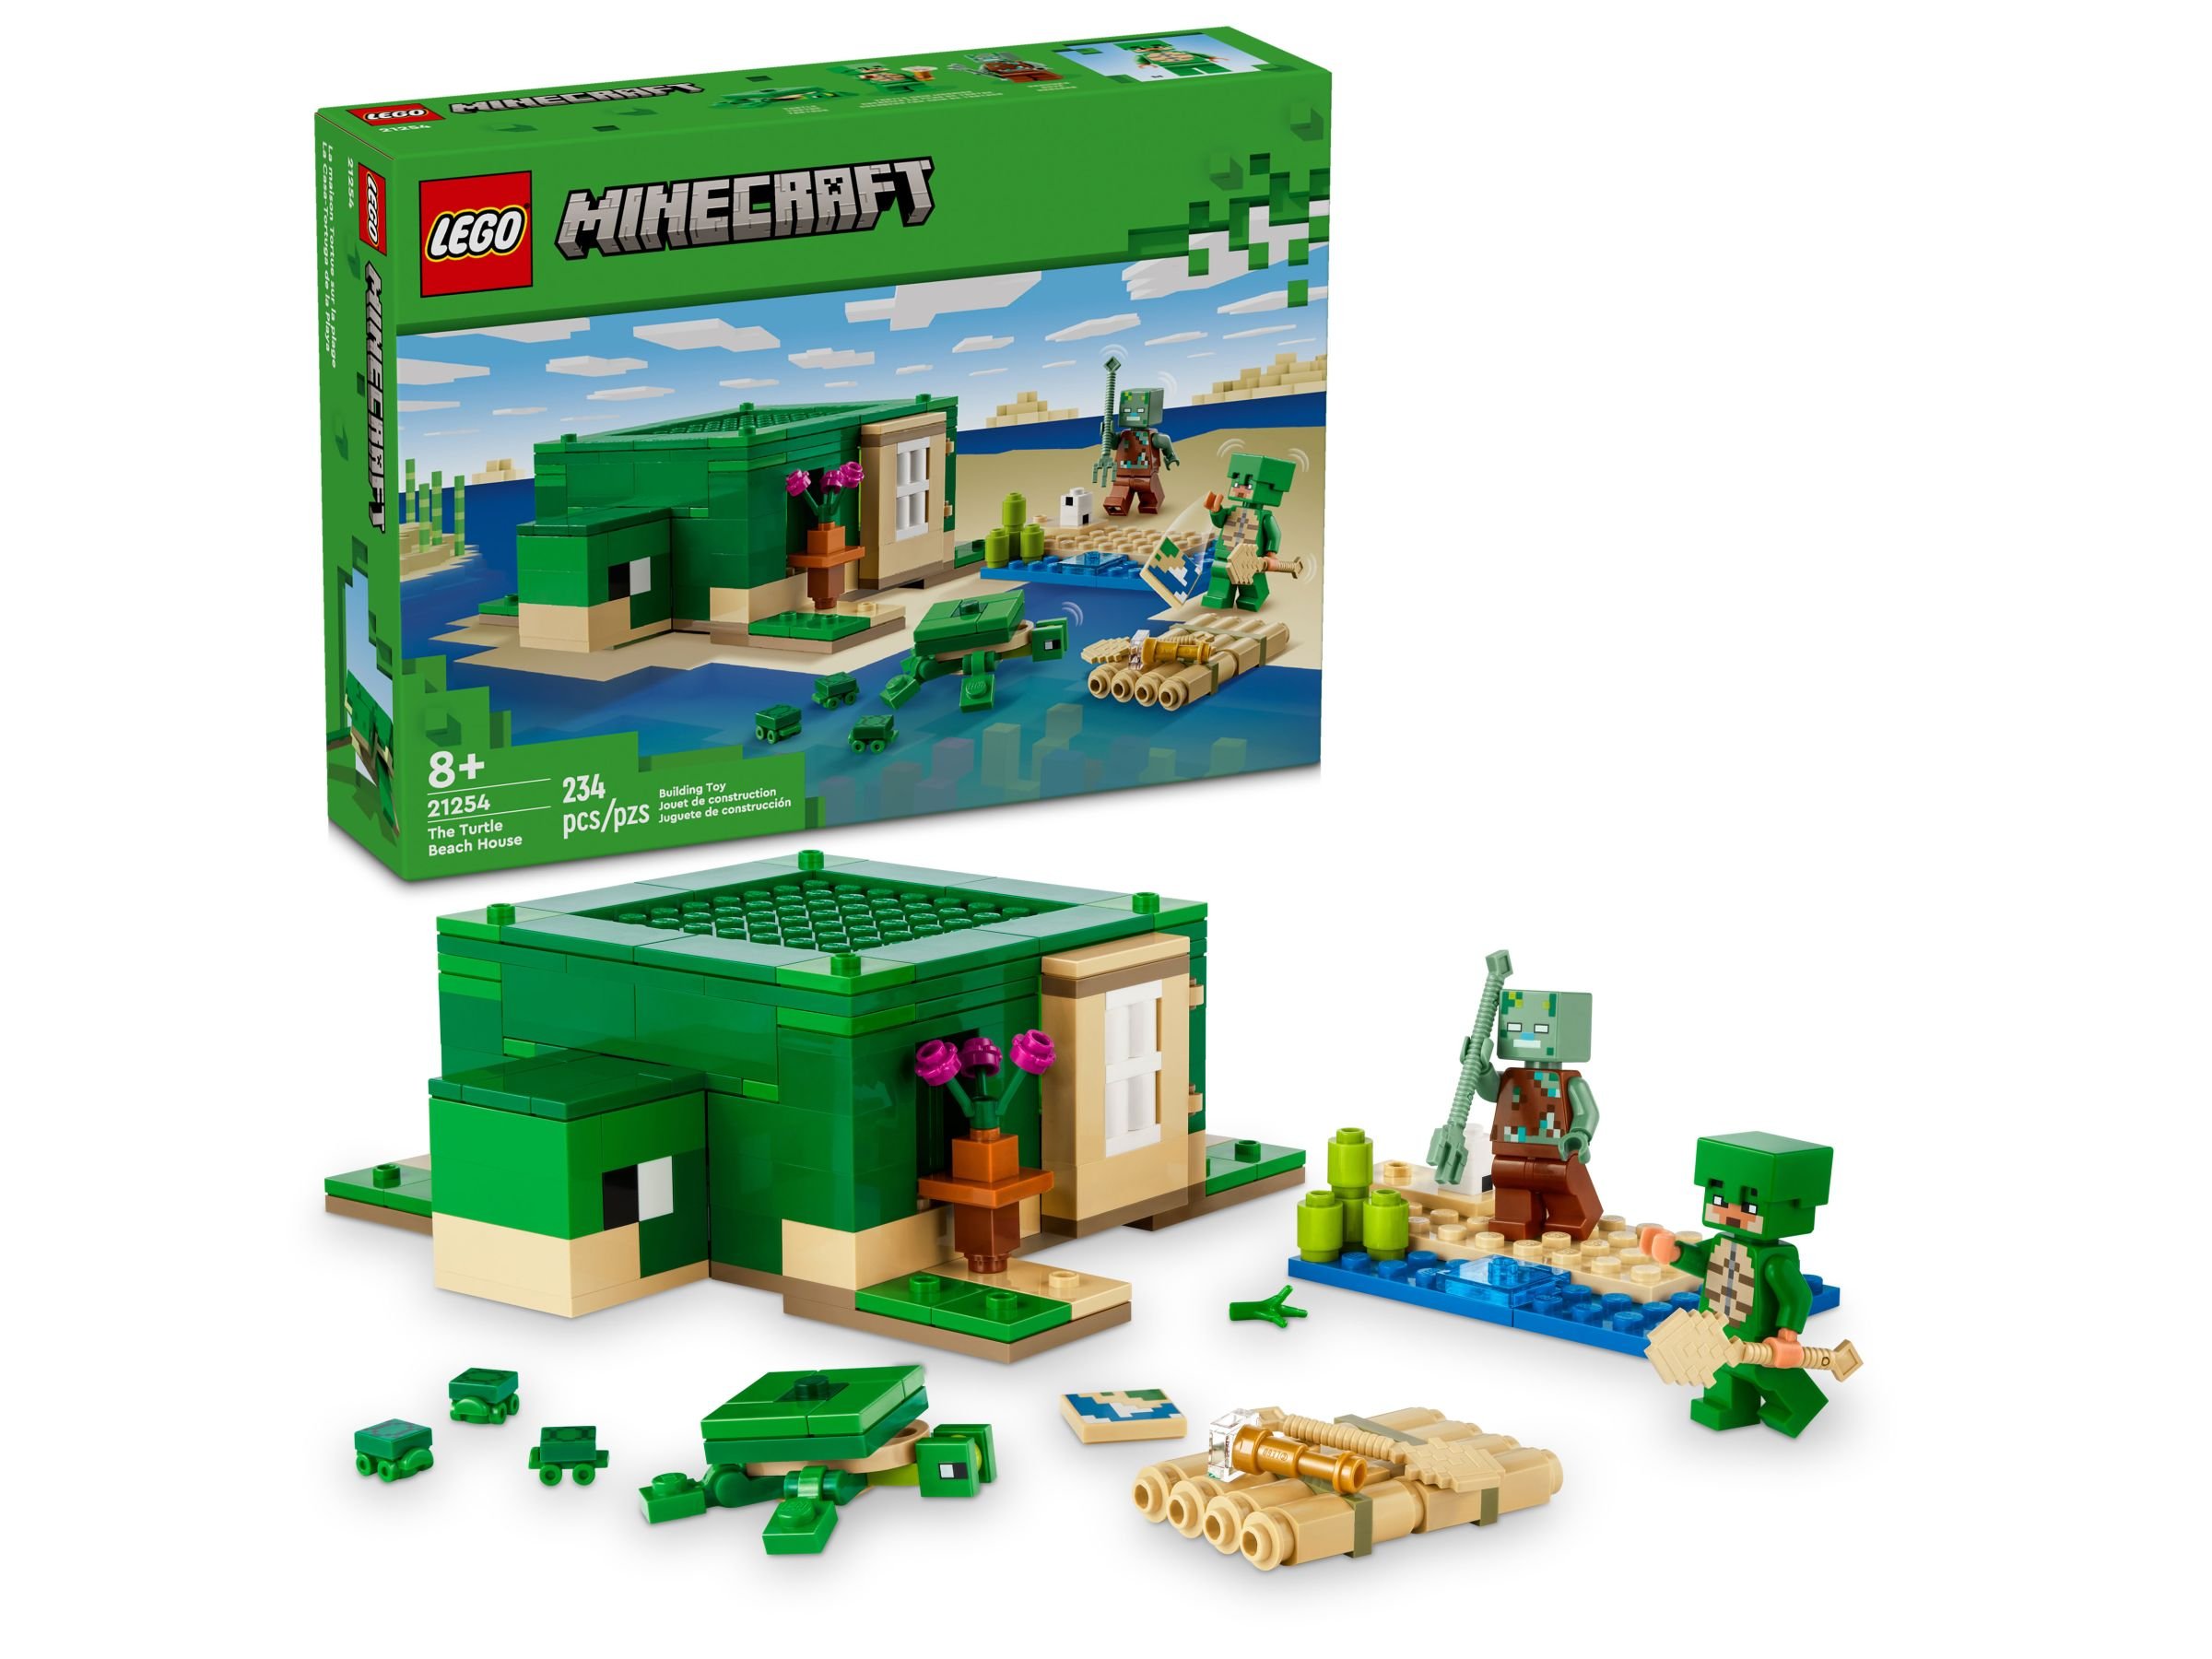 LEGO Minecraft 21254 Das Schildkrötenstrandhaus LEGO_21254_alt1.jpg